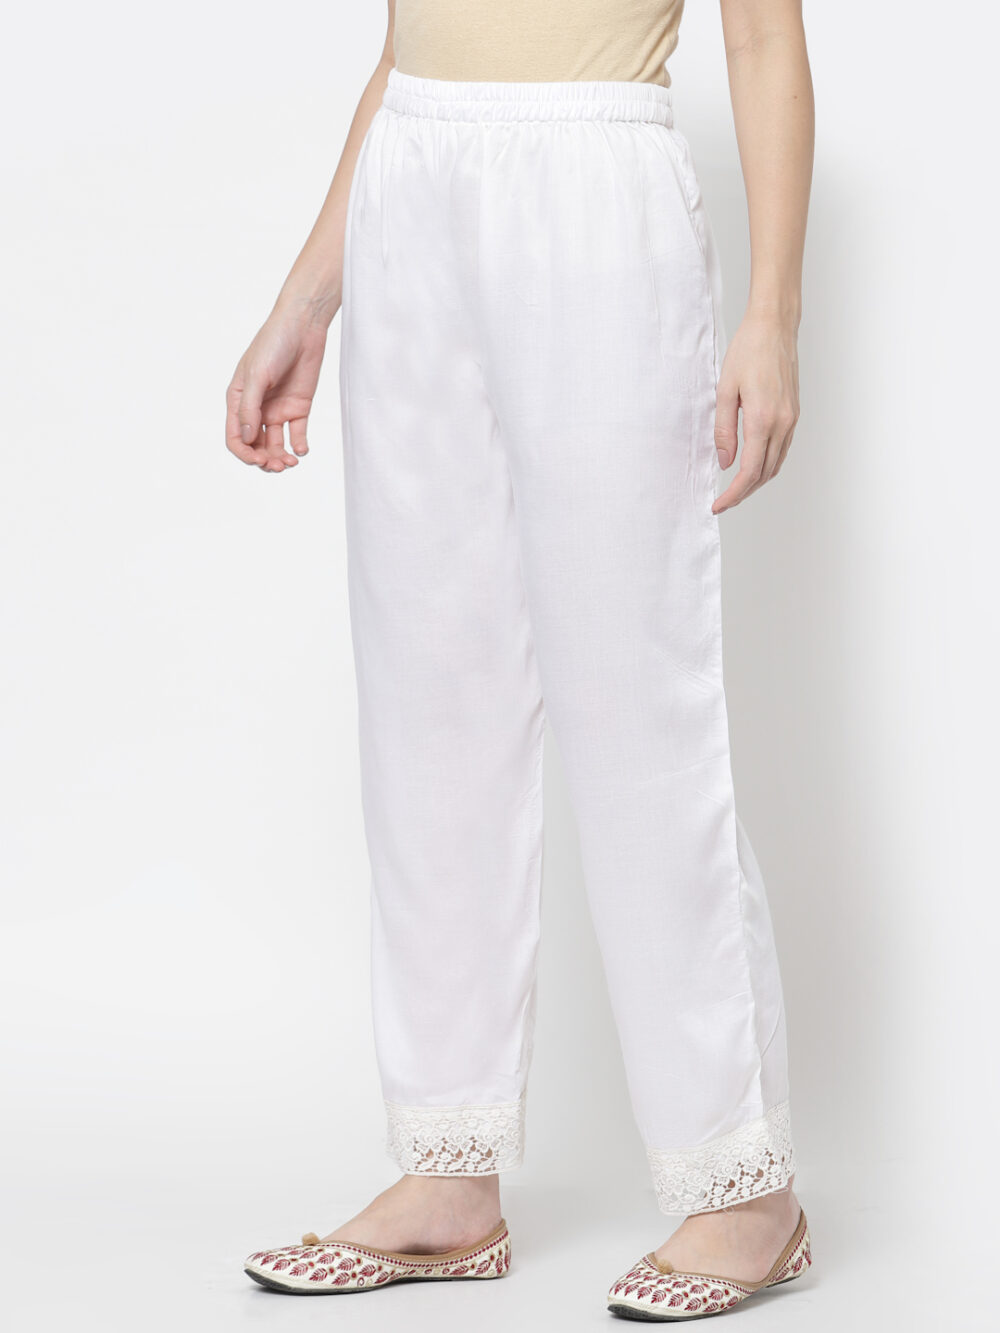 Buy Pant Pajama Stretchable L White at Amazonin